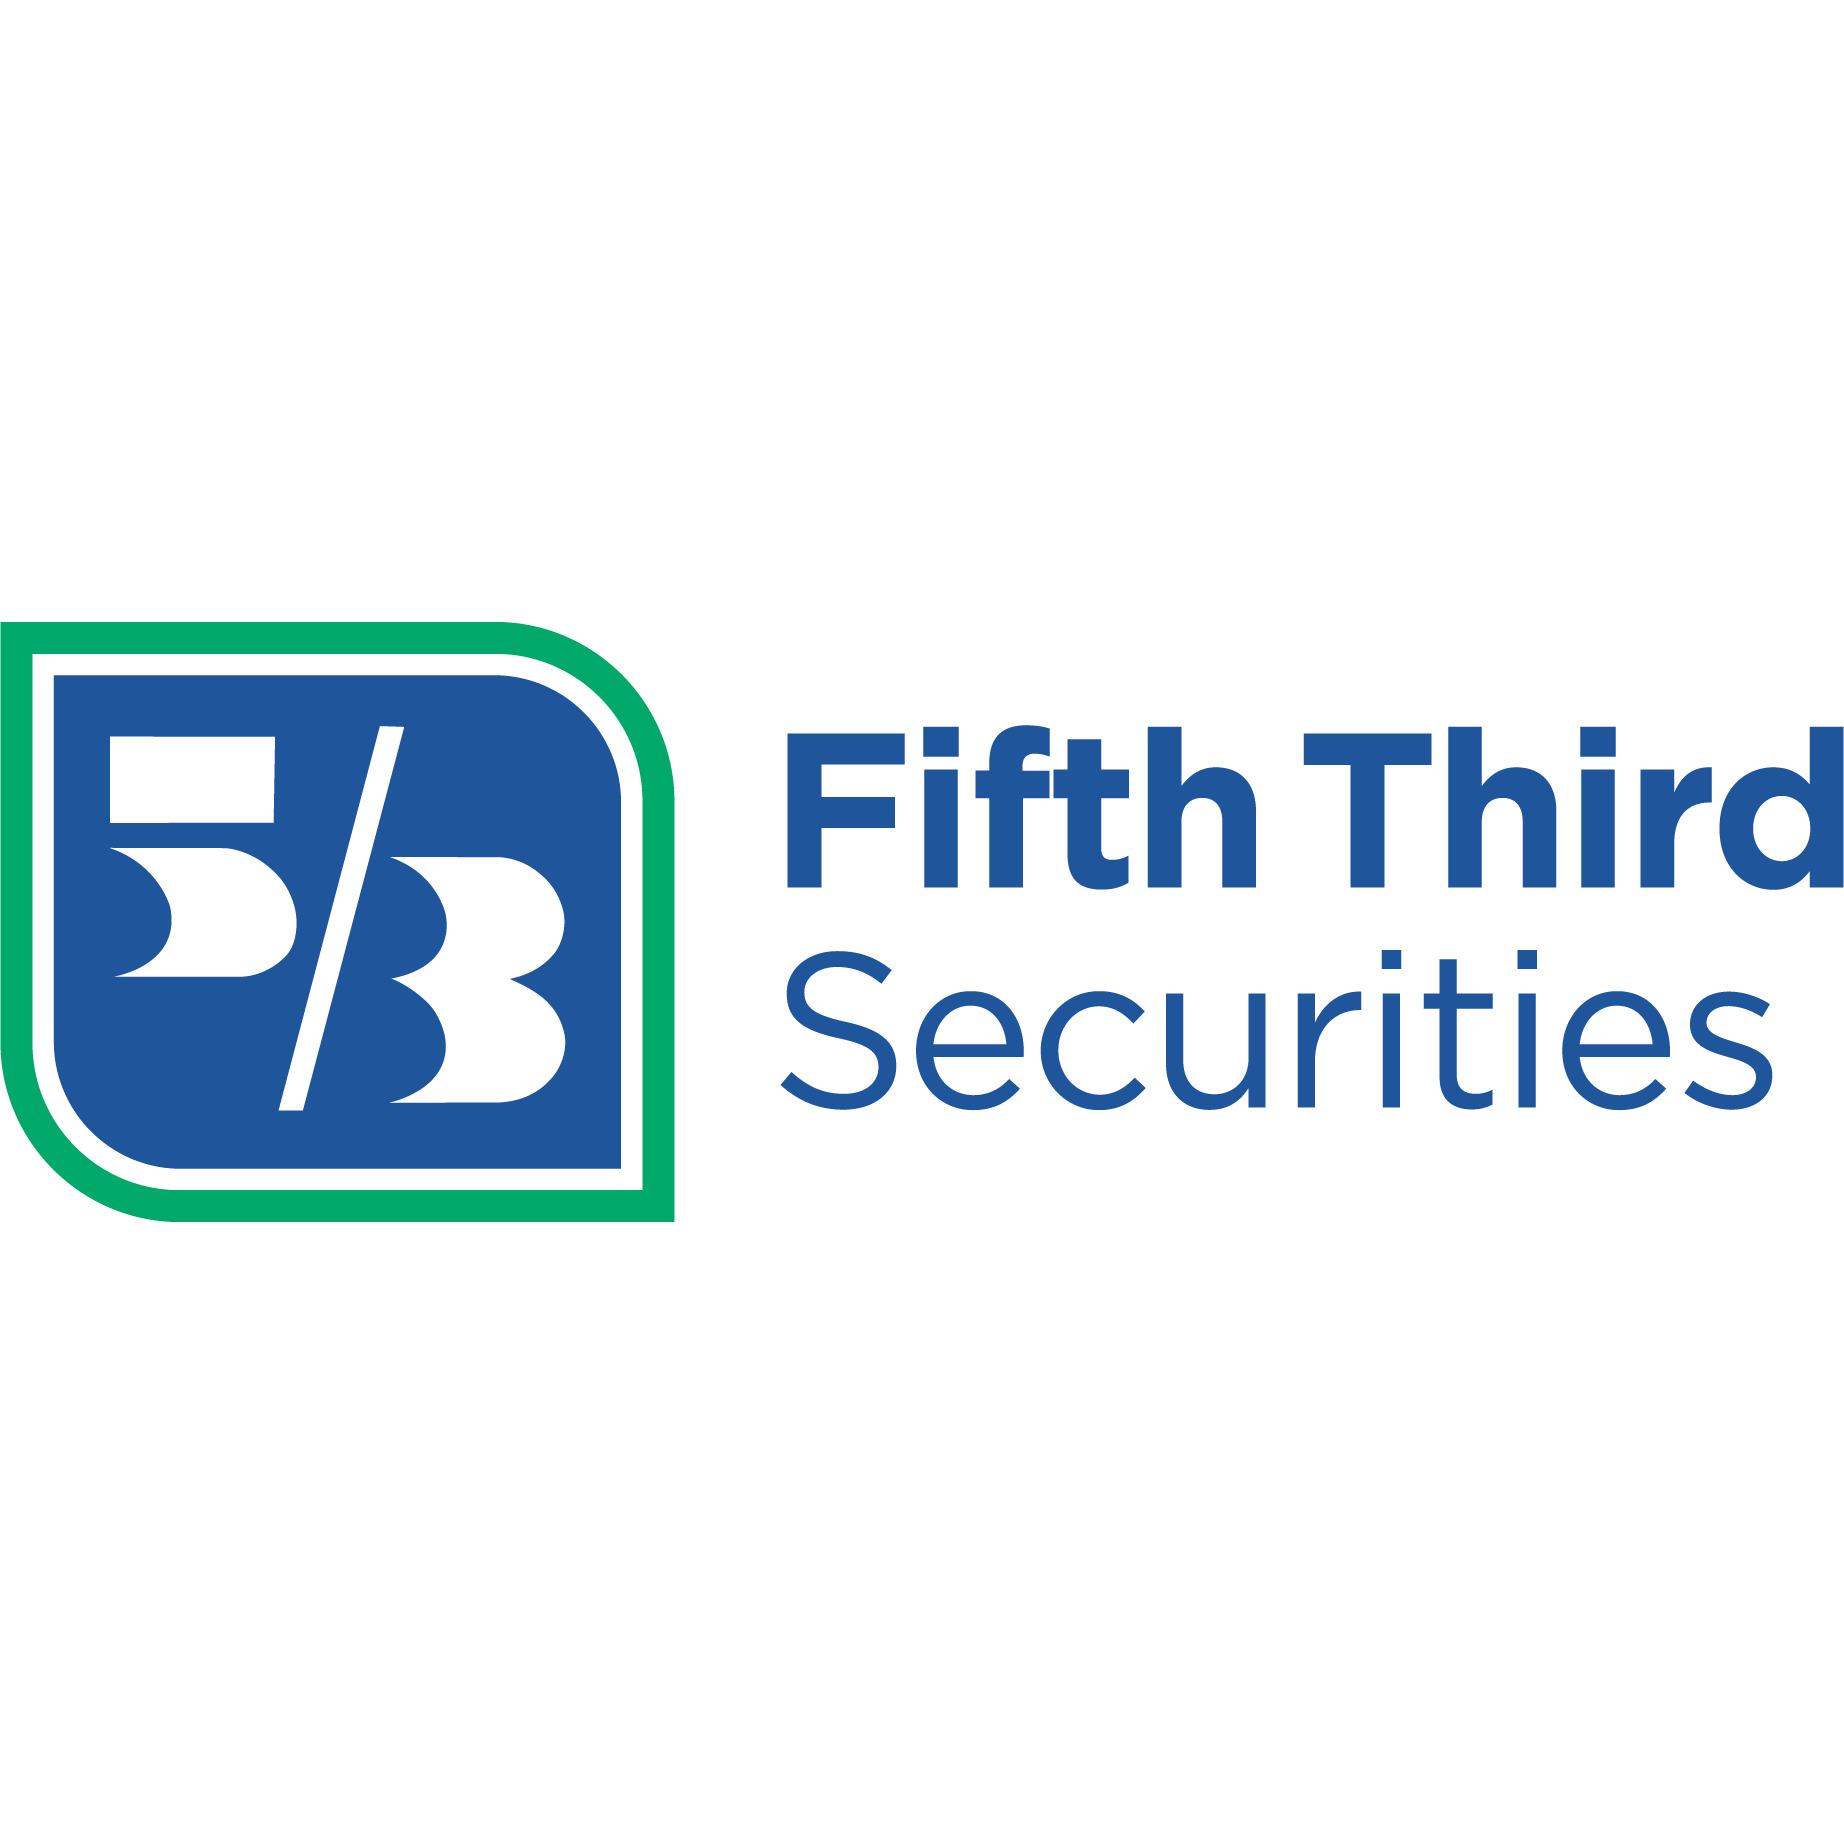 Fifth Third Securities - Sarah Lall